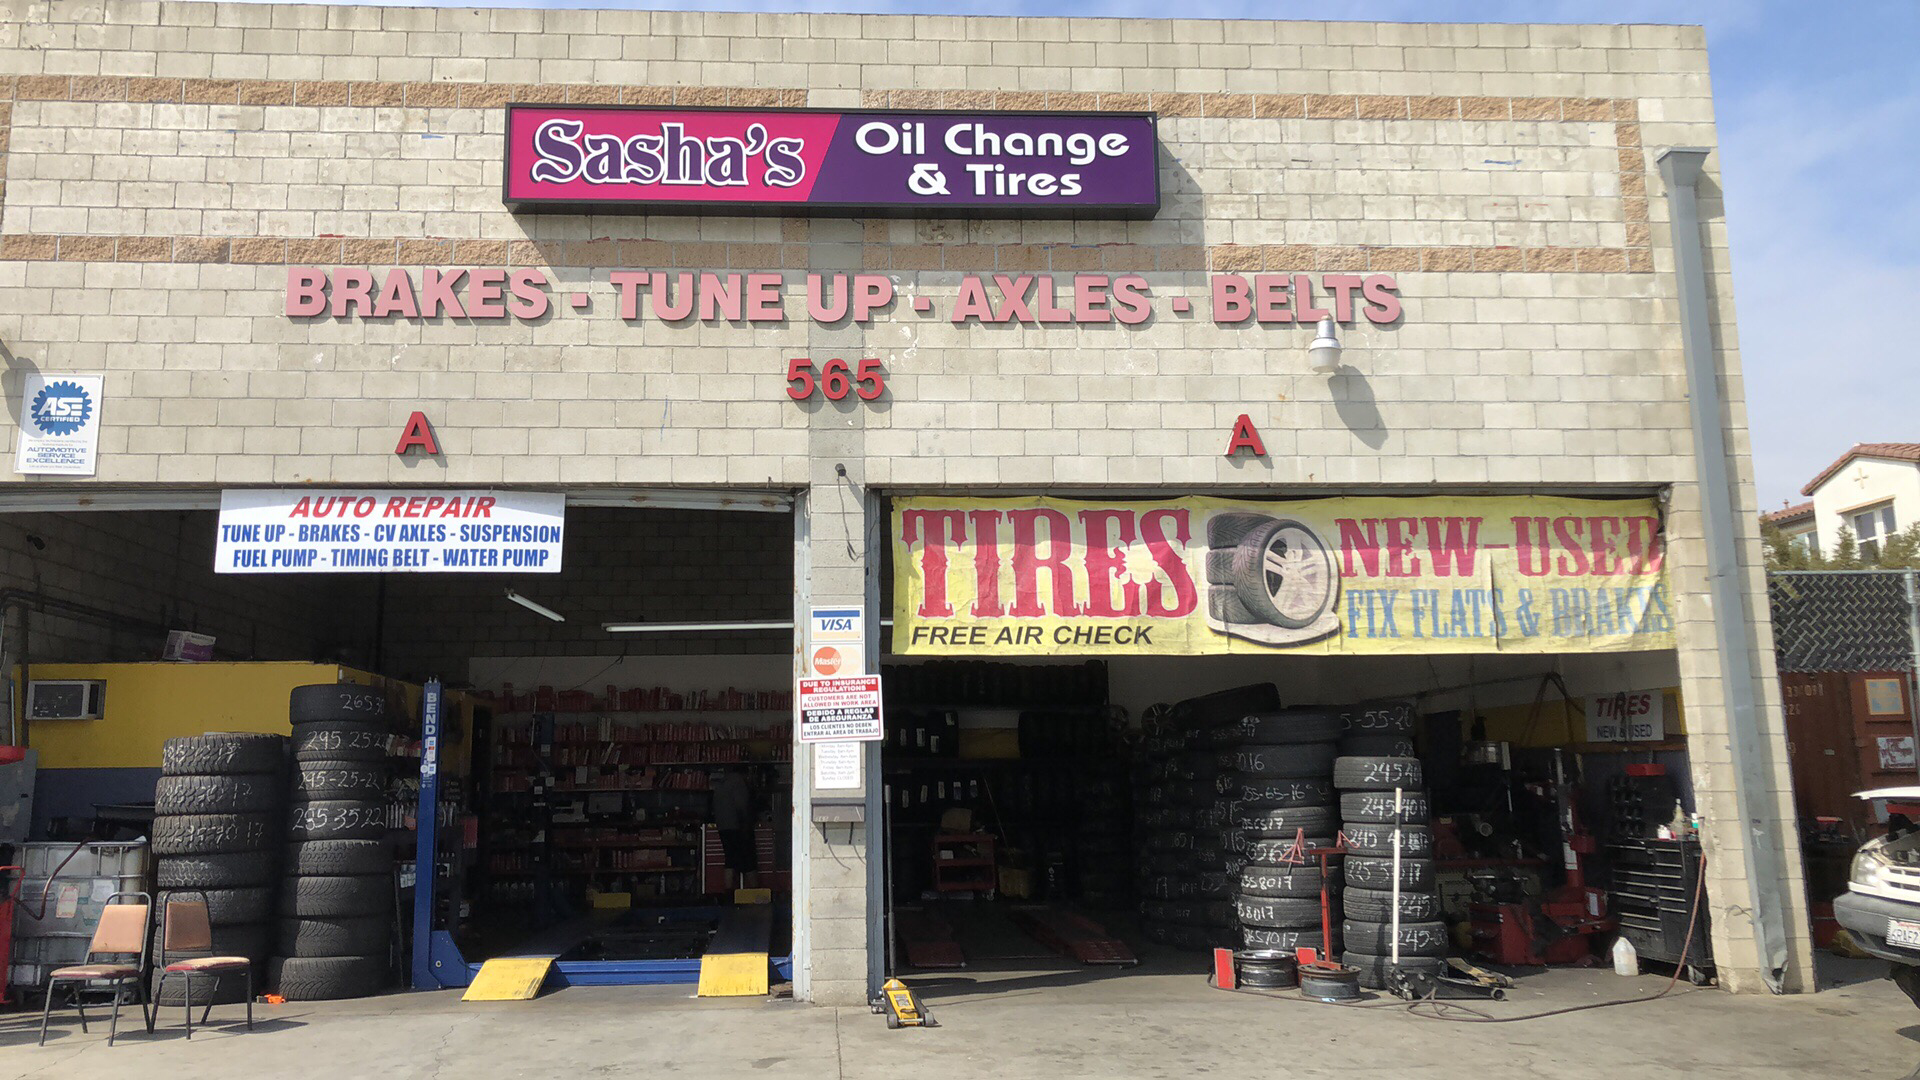 Sasha's Oil Change & Tires